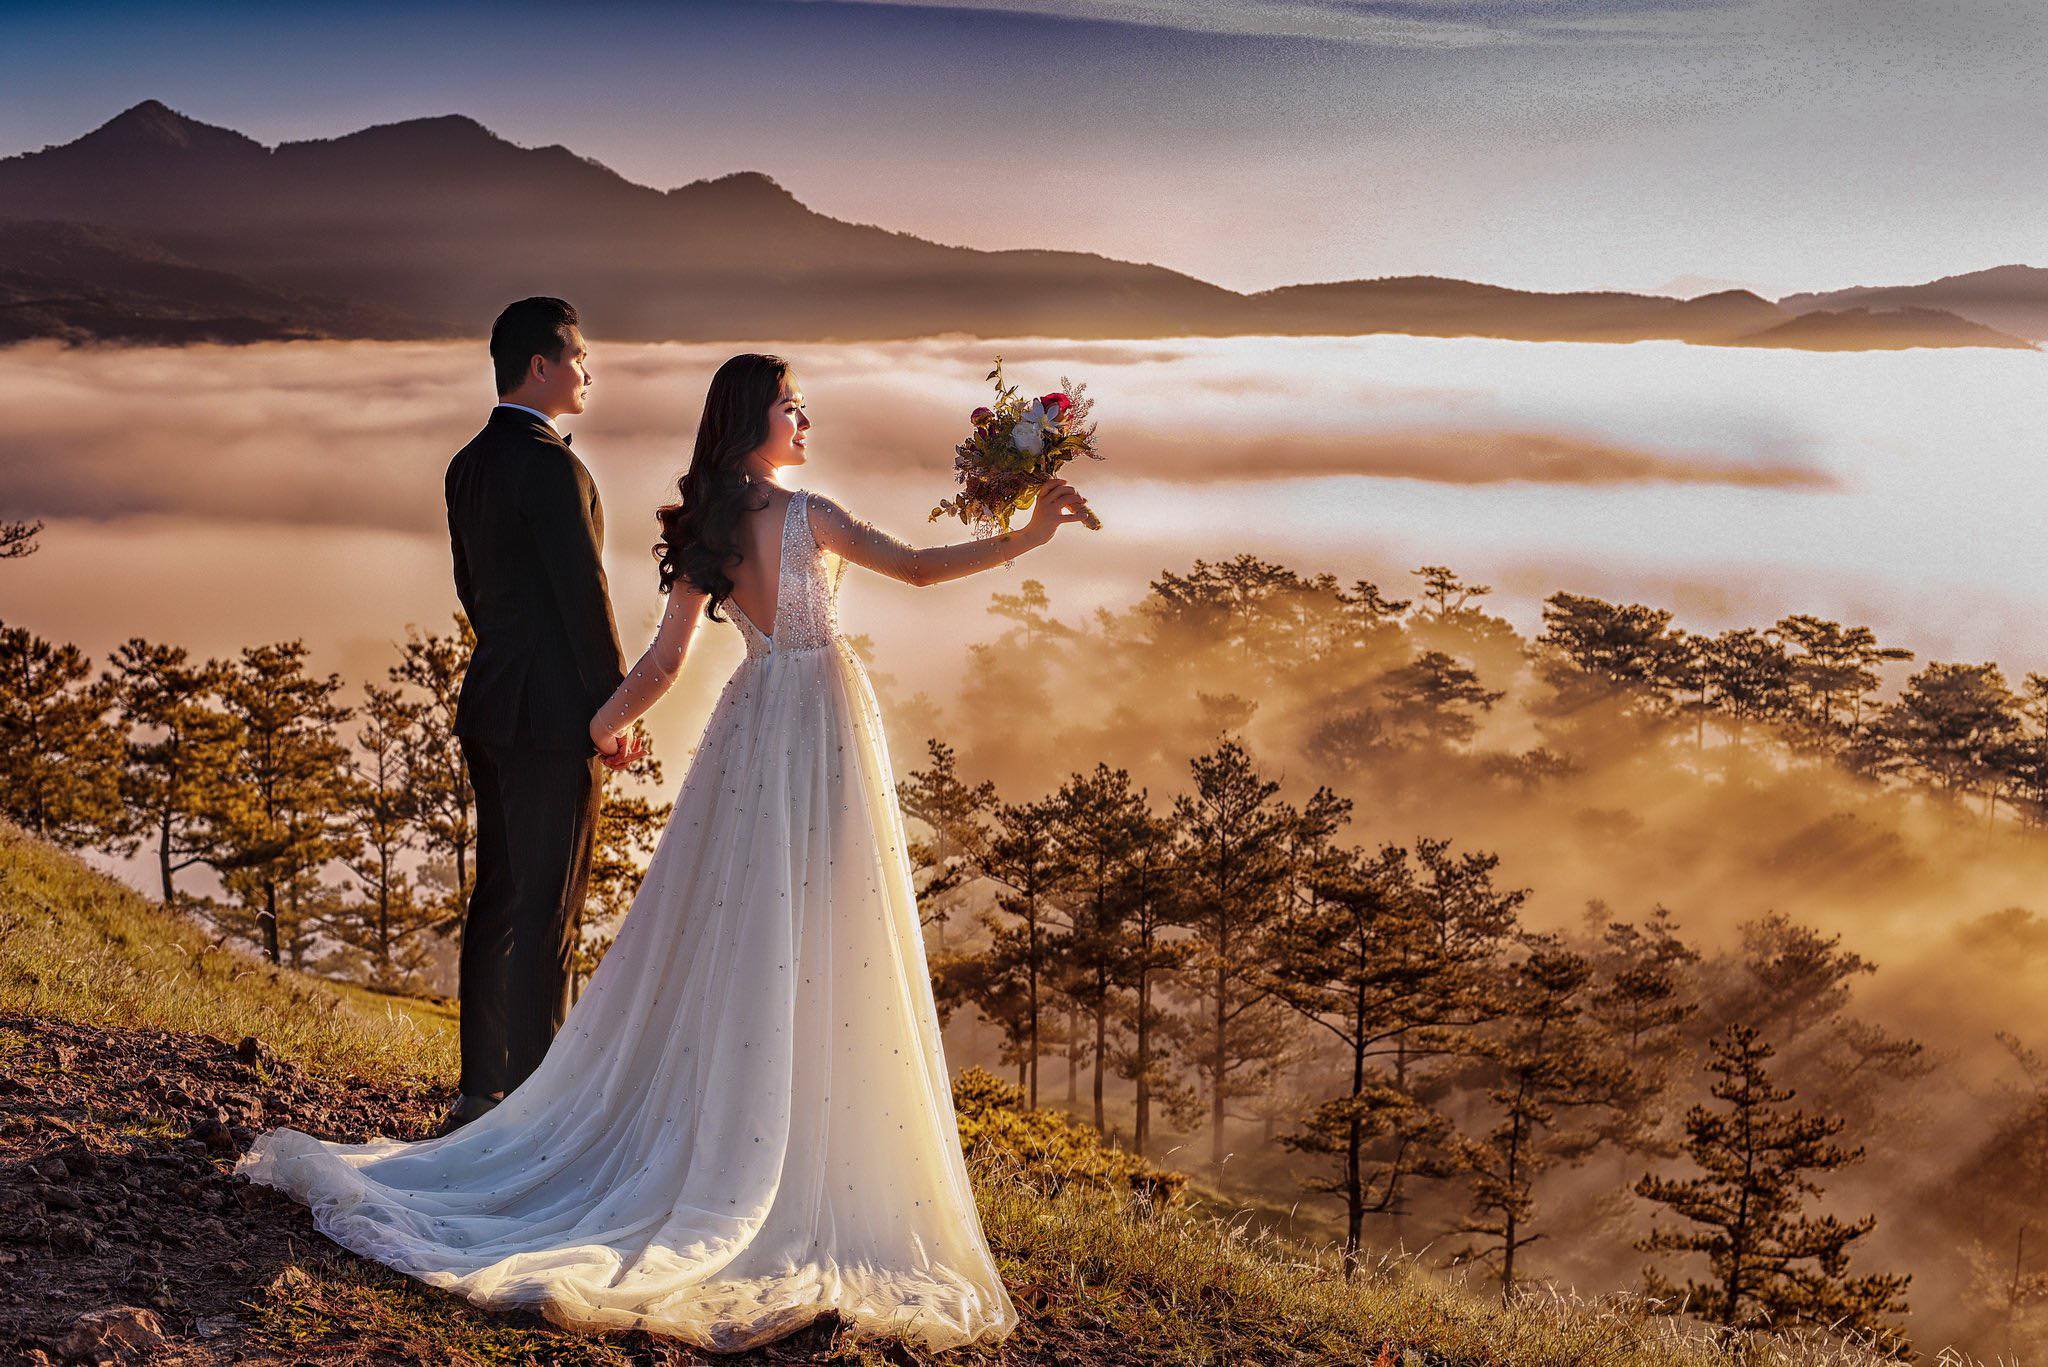 Nếu bạn đang lên kế hoạch chụp ảnh cưới tại Đà Lạt, hãy suy nghĩ xem mùa nào là đẹp nhất để lưu giữ những khoảnh khắc đẹp nhất trong đời. Hình ảnh vẻ đẹp huyền ảo, nét tinh tế và ấm áp của Đà Lạt sẽ tạo nên một bộ ảnh cưới tuyệt vời.